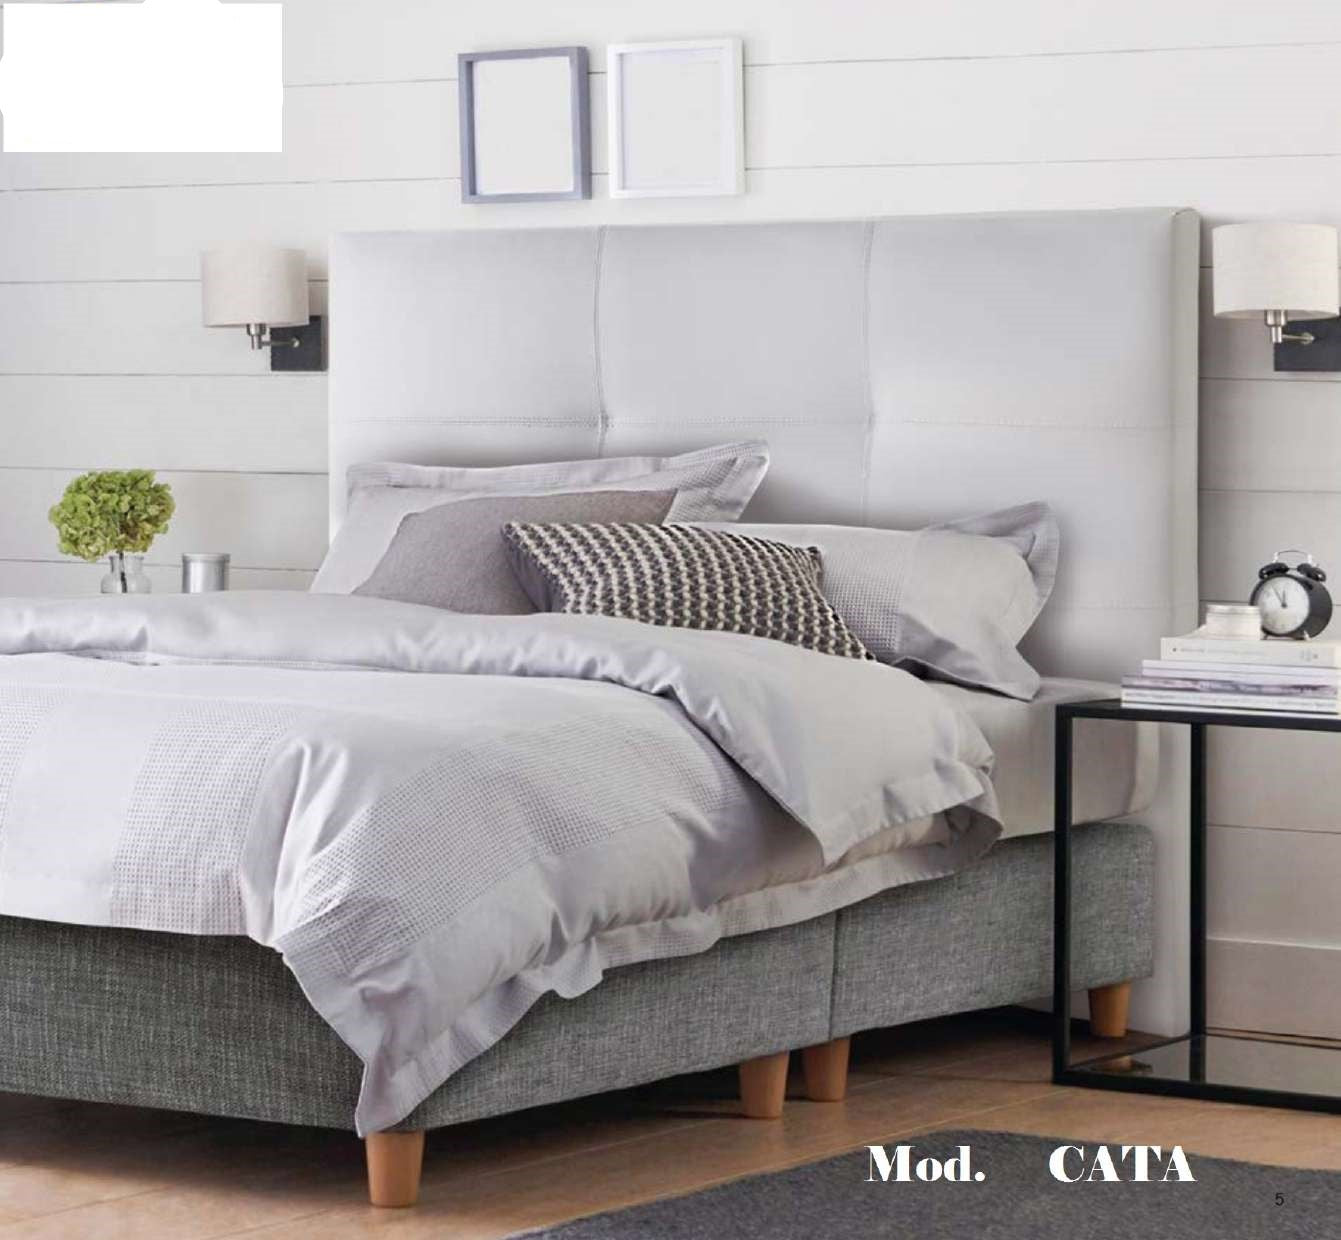 Cabecero económico para camas doble de hasta 160 cm - Rimini - Don Baraton:  tienda de sofás, colchones y muebles